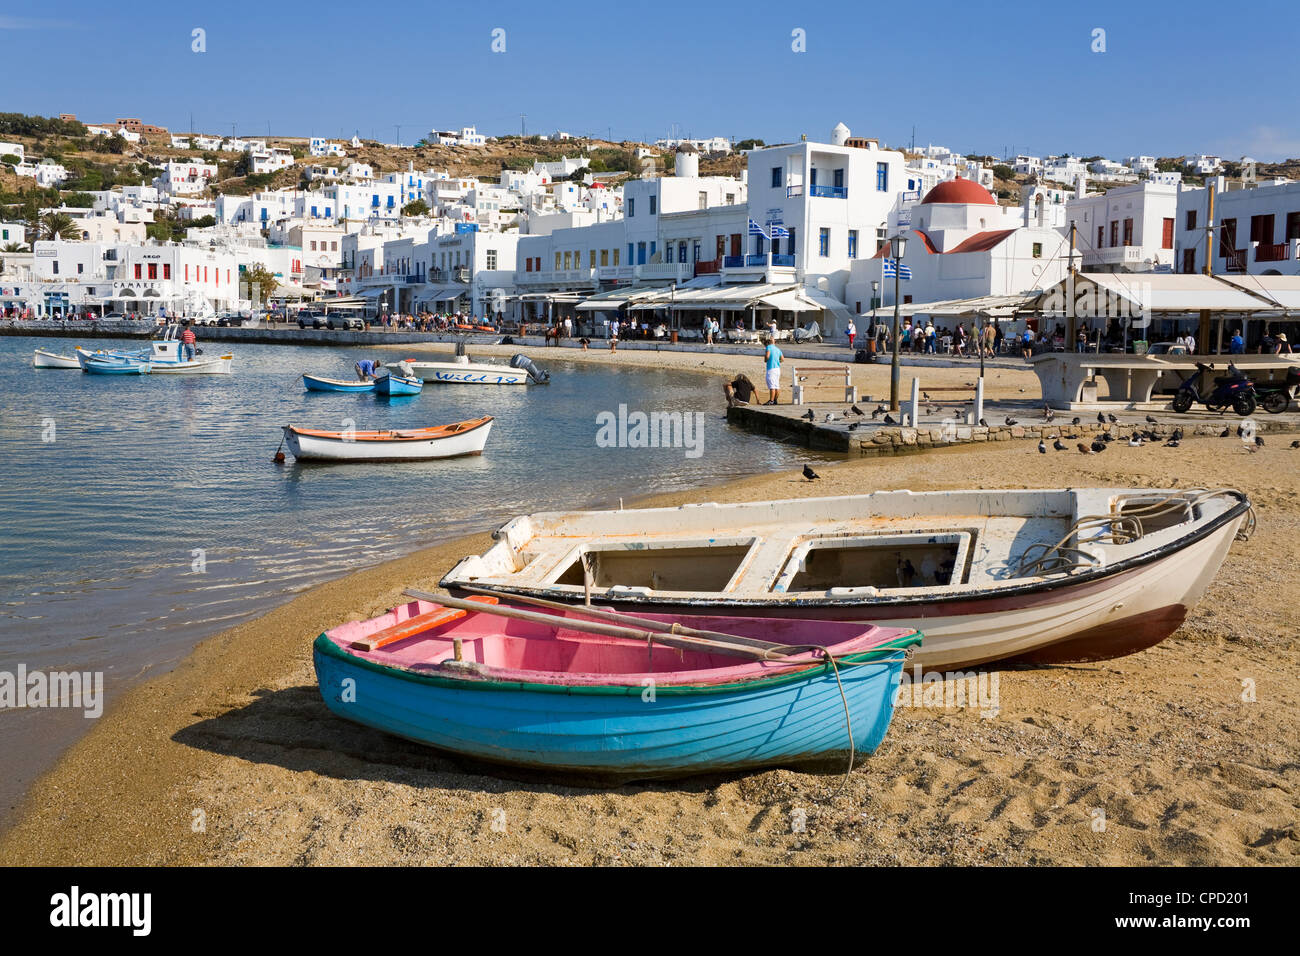 Bateaux de pêche dans la ville de Mykonos, l'île de Mykonos, Cyclades, îles grecques, Grèce, Europe Banque D'Images